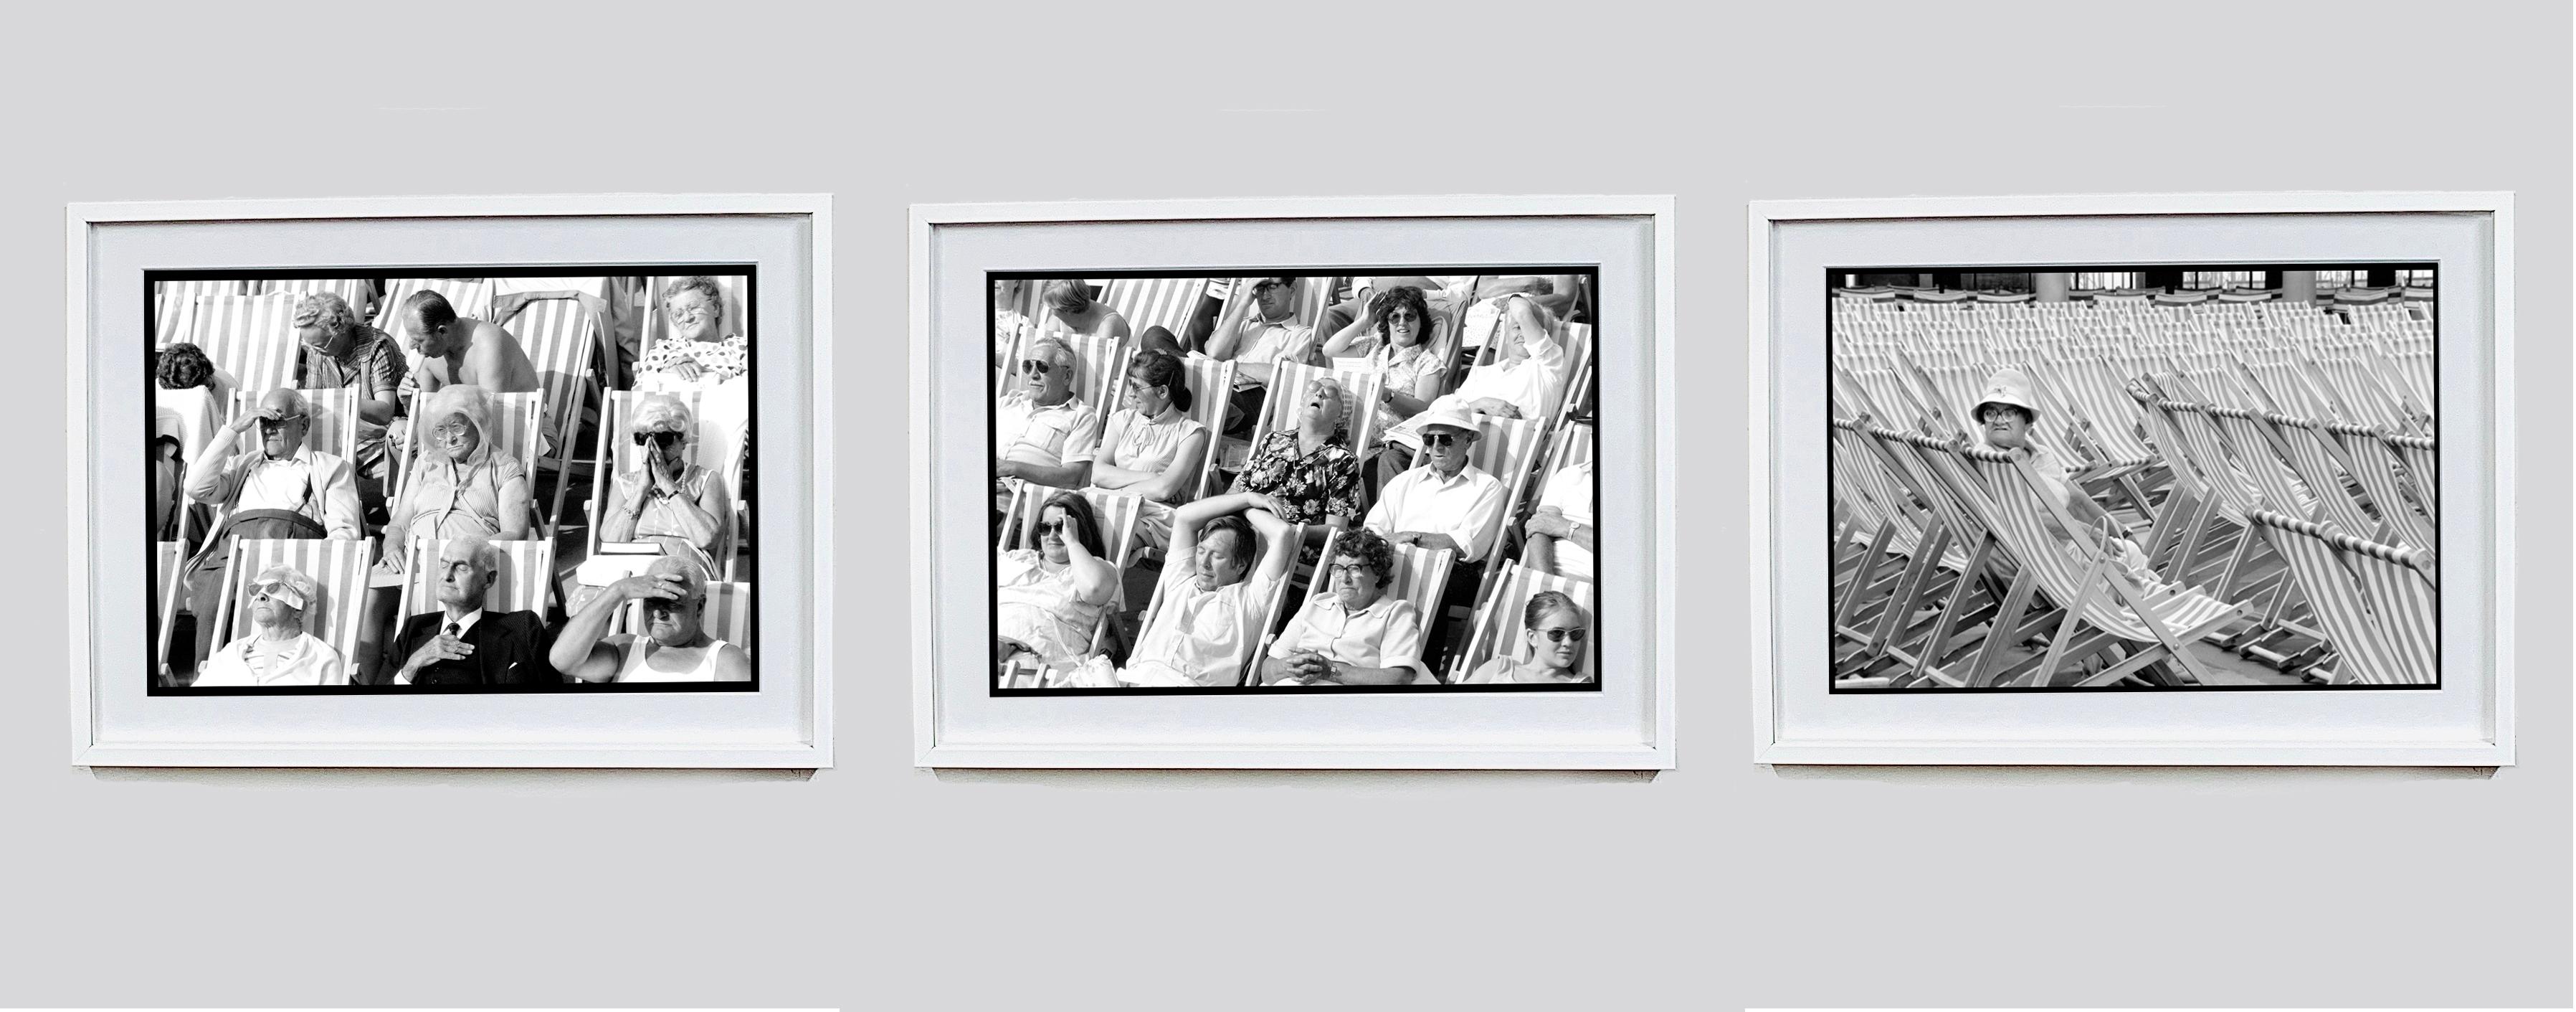 Bandstand I, Eastbourne, UK - Black and White Vintage Photography 6